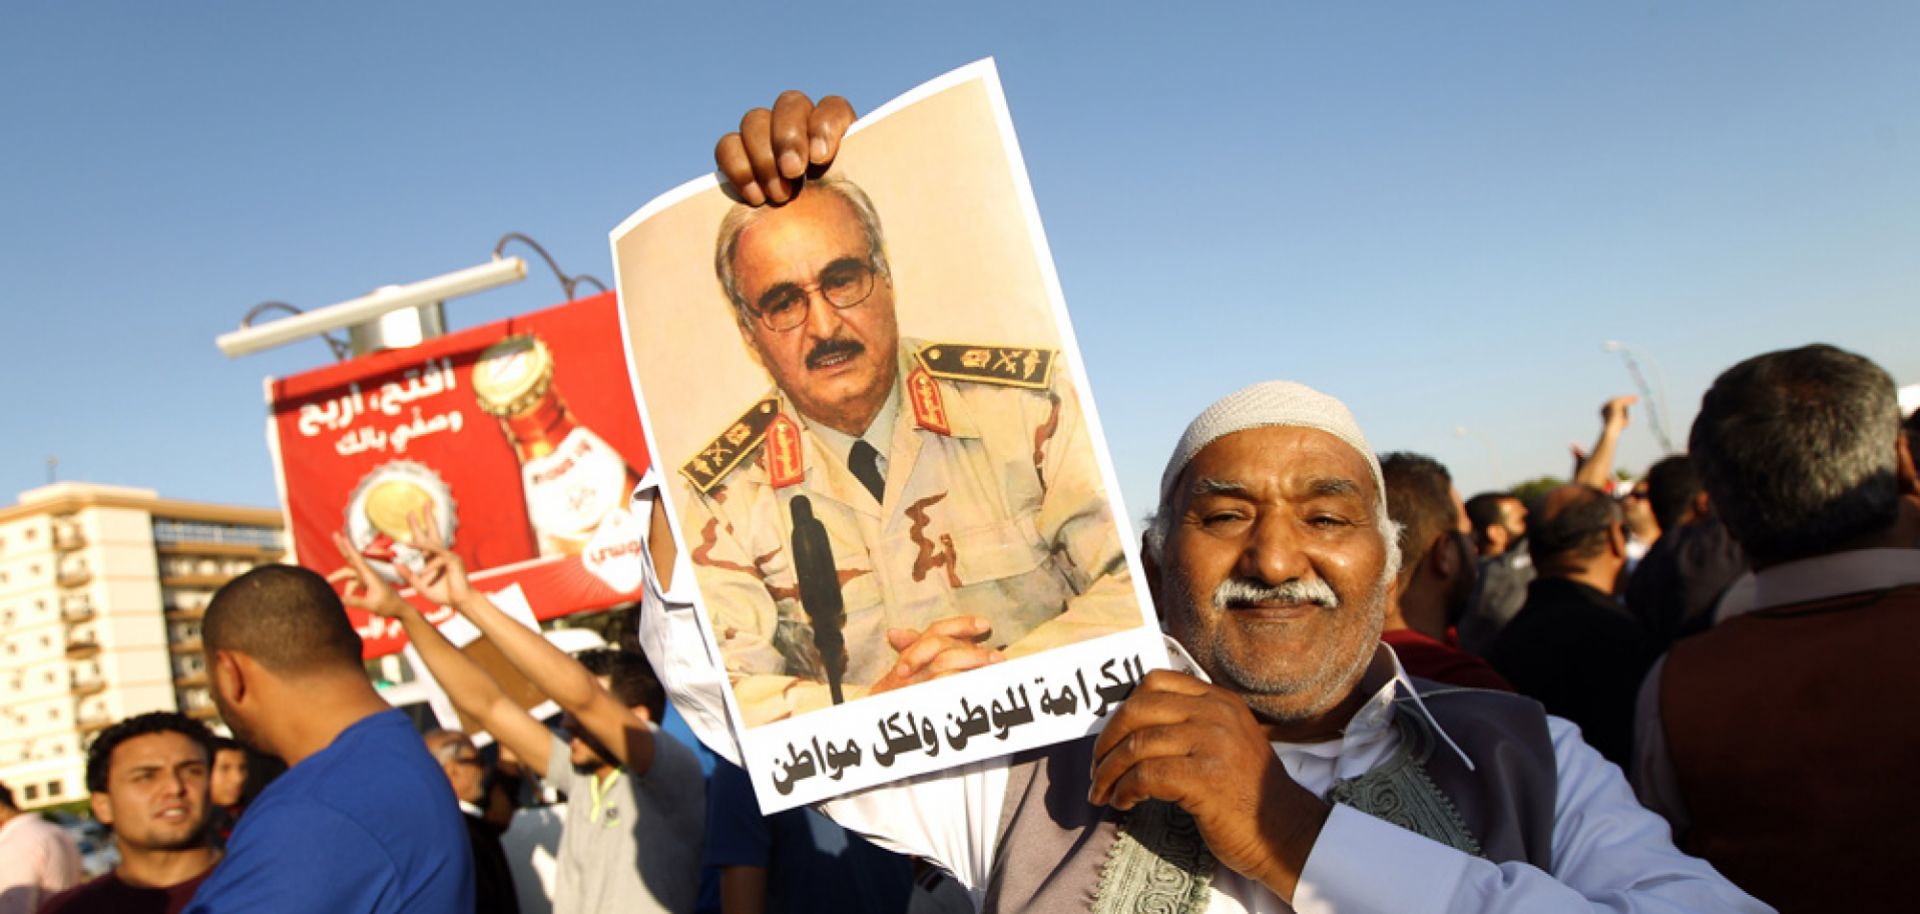 A Libyan man carries a portrait of retired Gen. Khalifa Hifter.